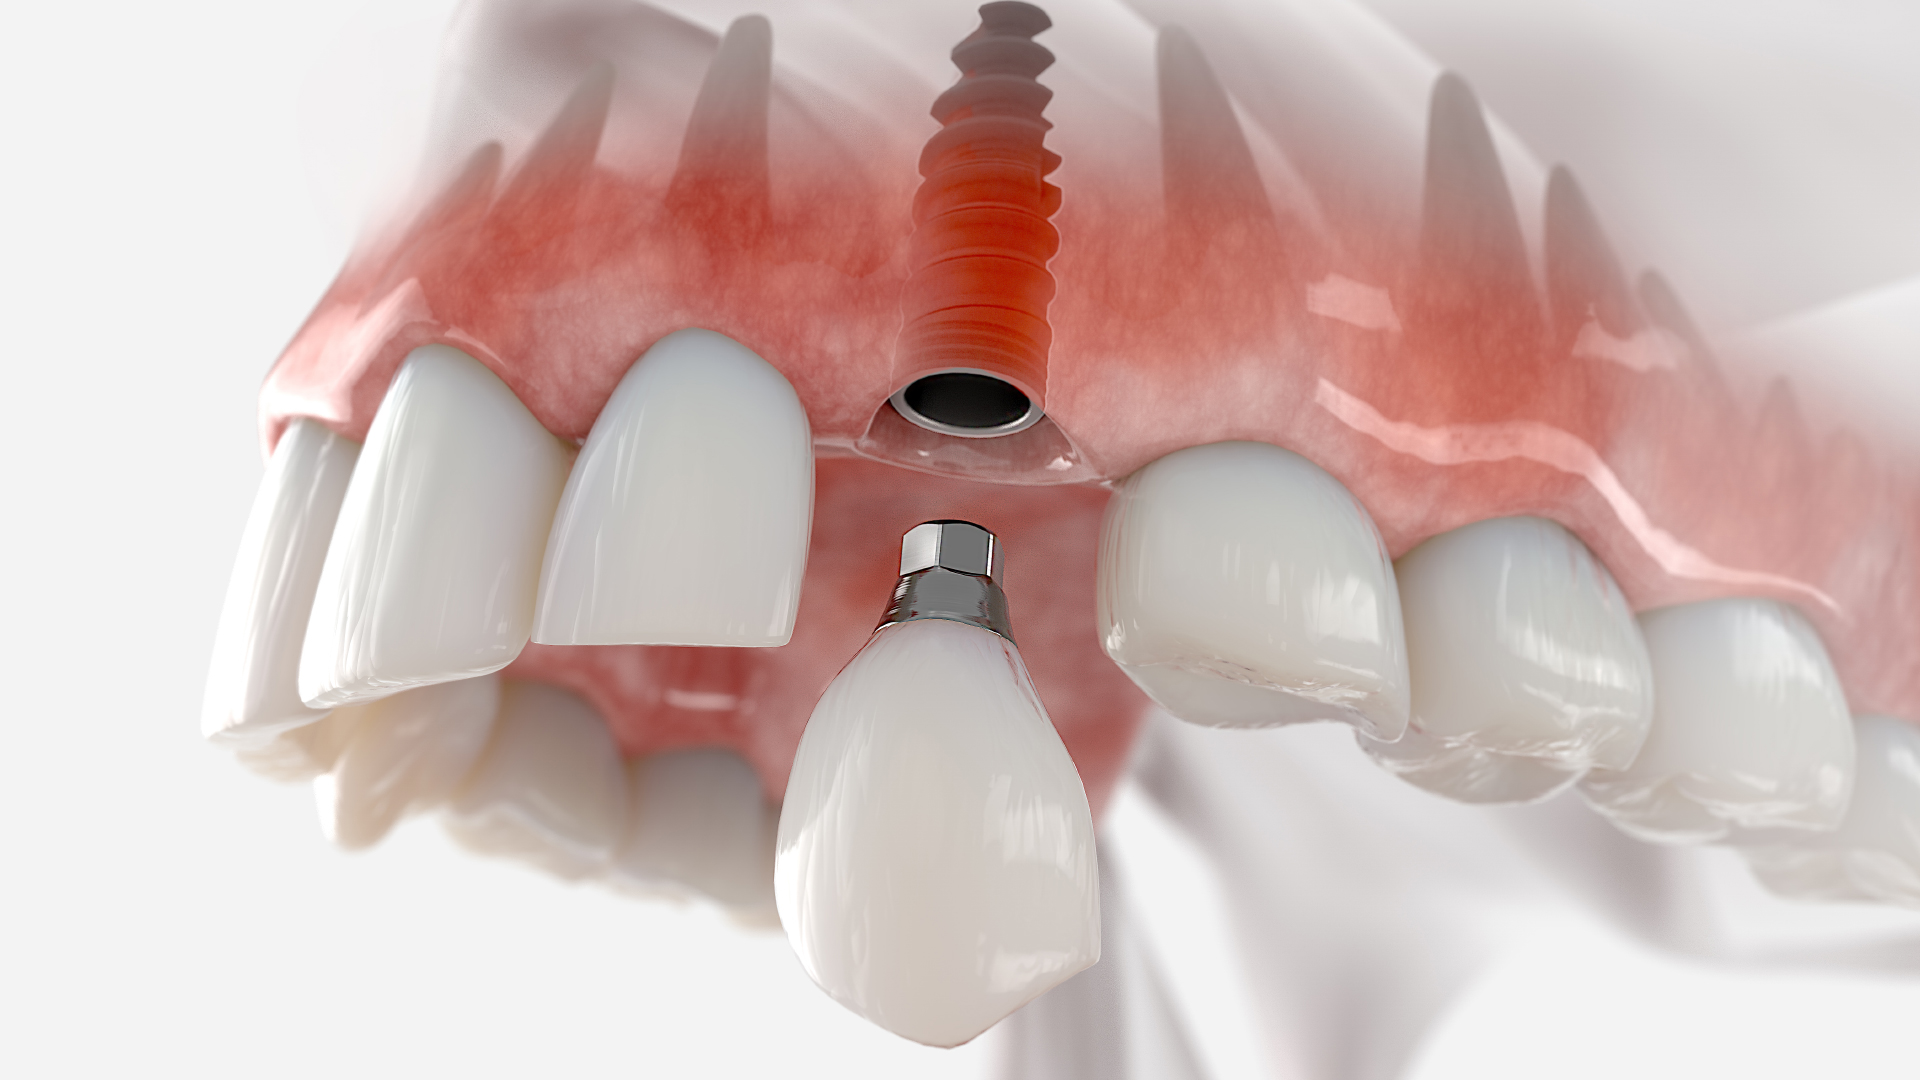 Prothèse dentaire fixe : tout savoir sur ses dispositifs